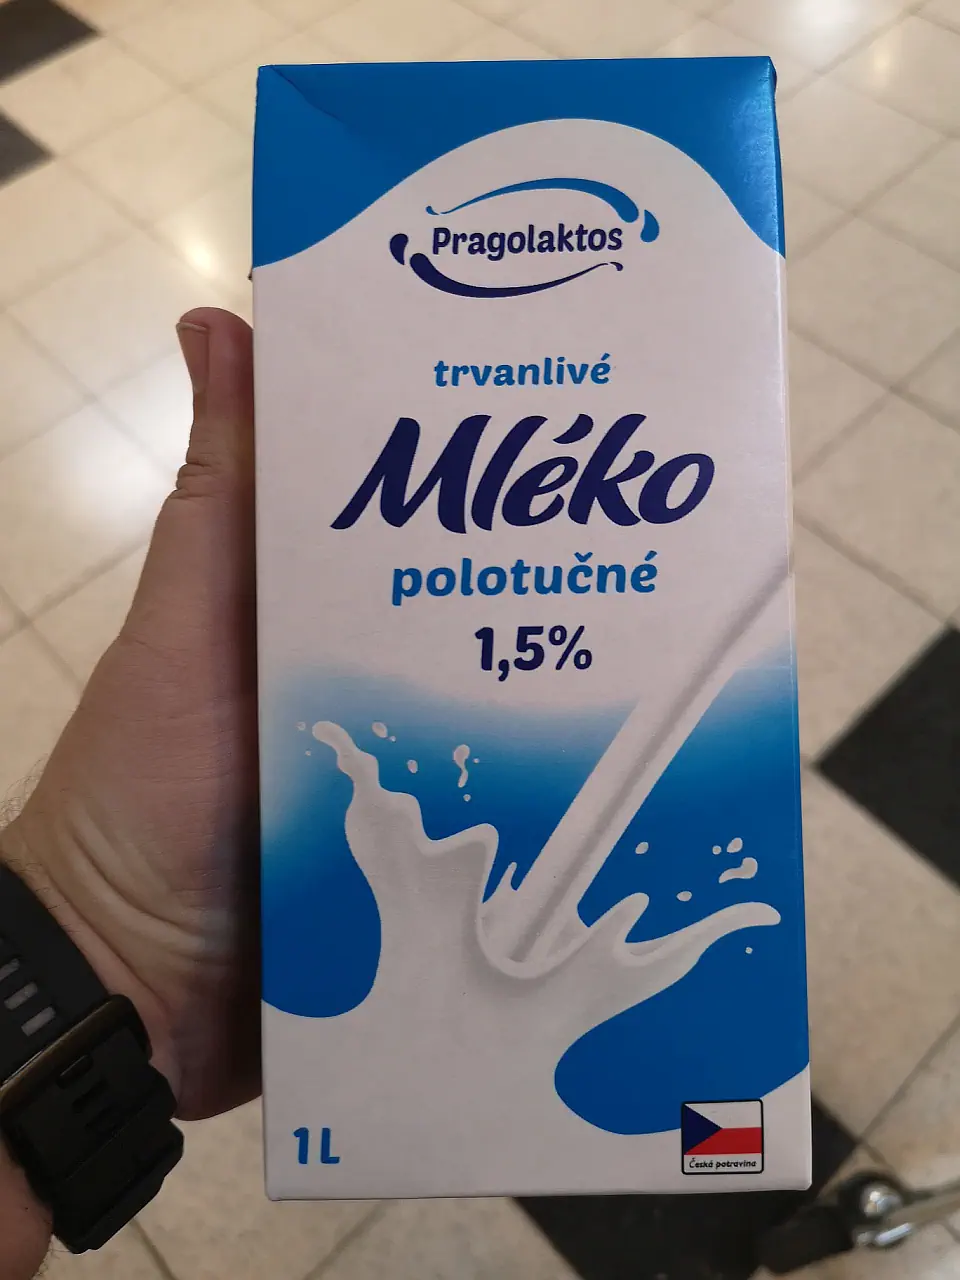 Pragolaktos Mléko trvanlivé polotučné